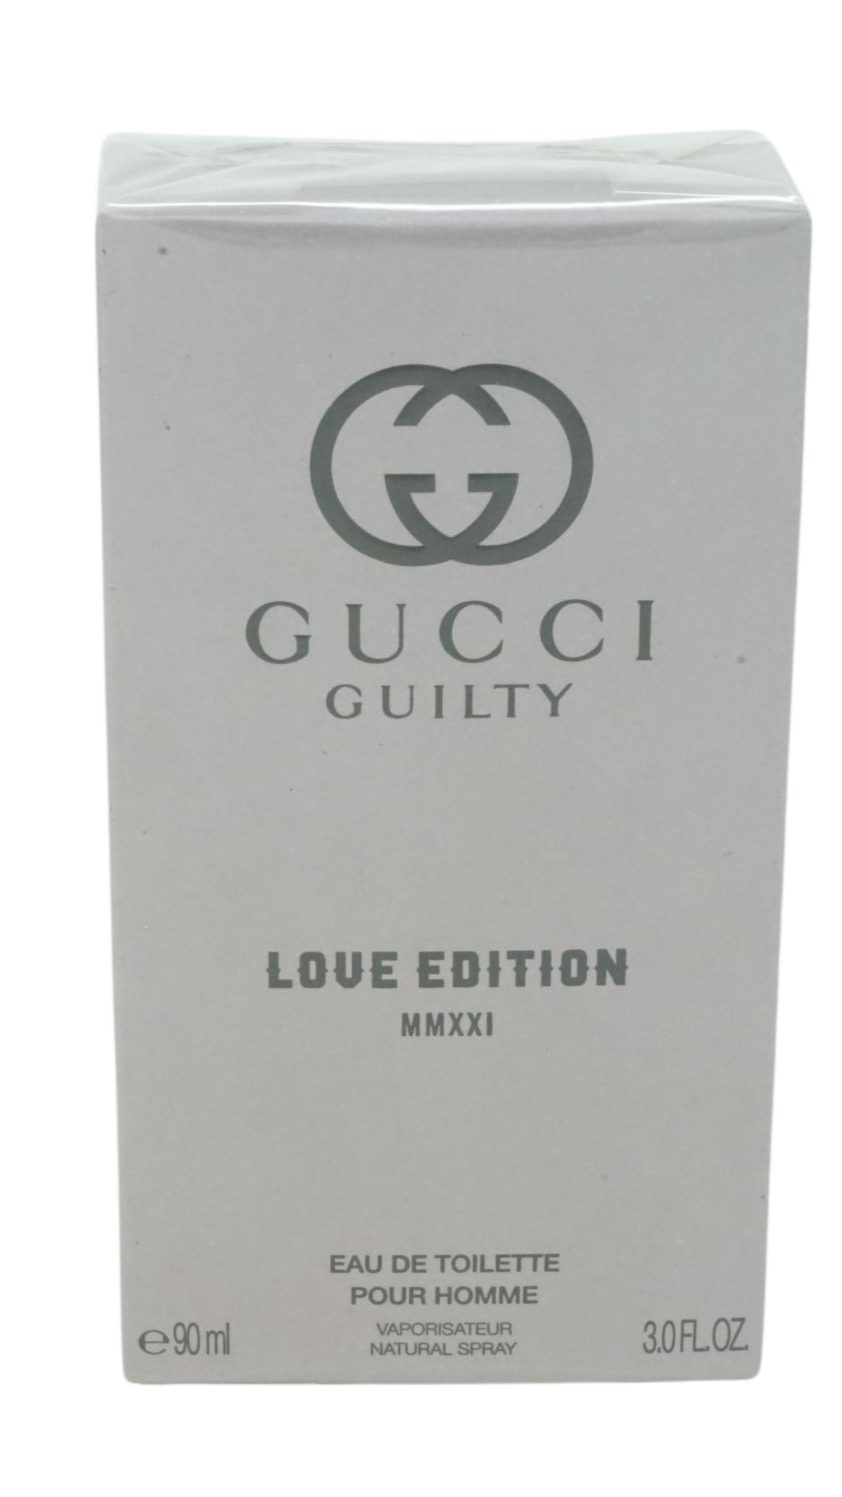 Love Eau GUCCI Guilty MMXXI Edition Toilette Toilette 90ml de de Gucci Eau